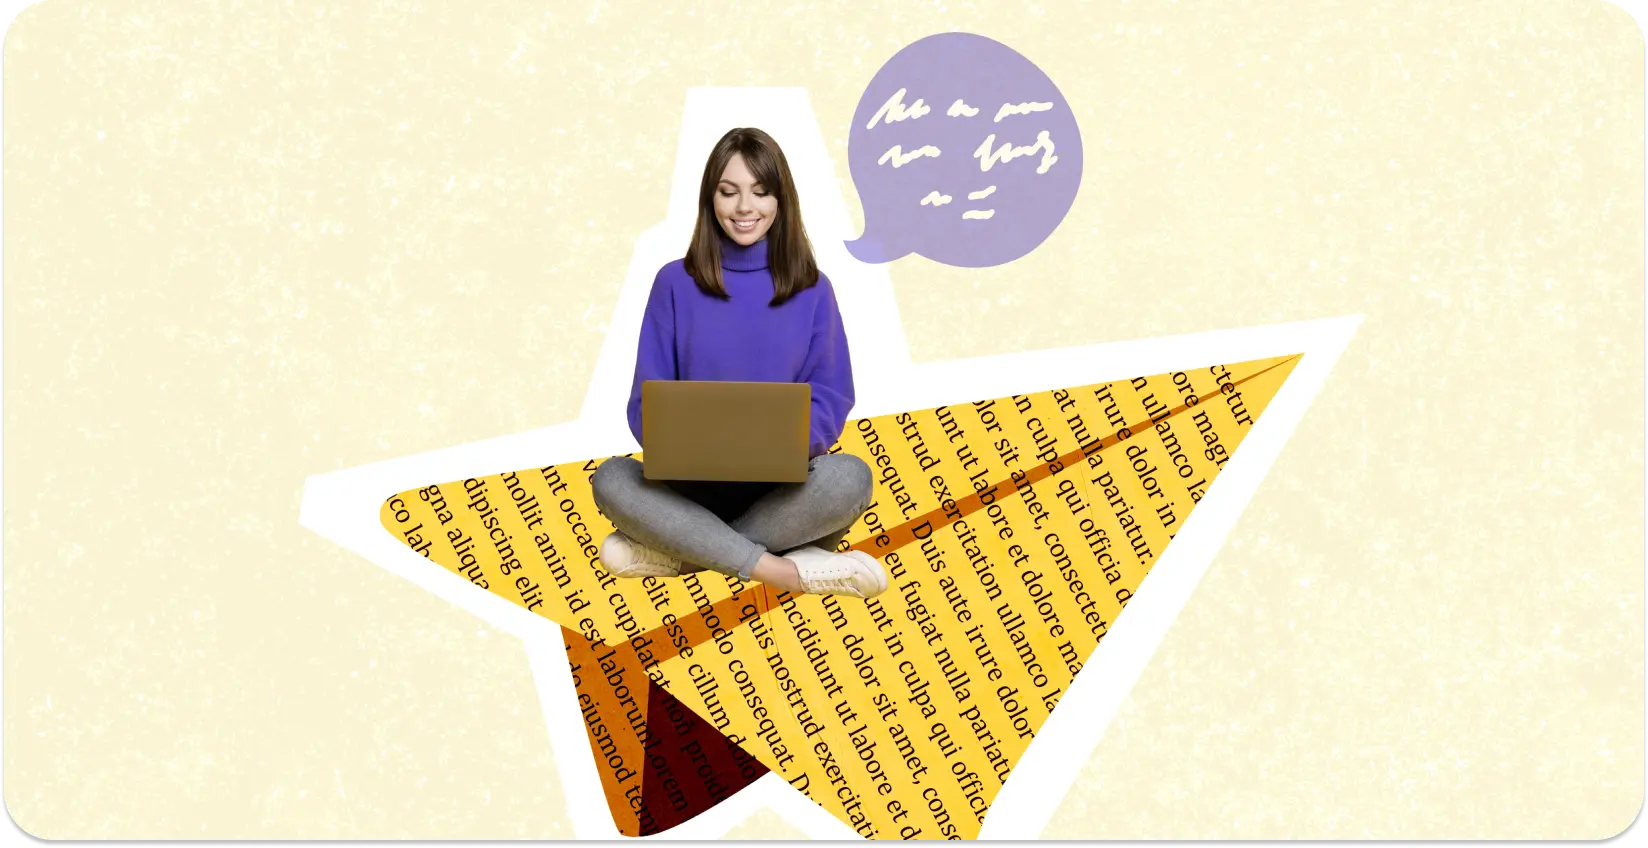 Un écrivain est assis sur un collage en forme d’étoile de pages remplies de texte avec un ordinateur portable.